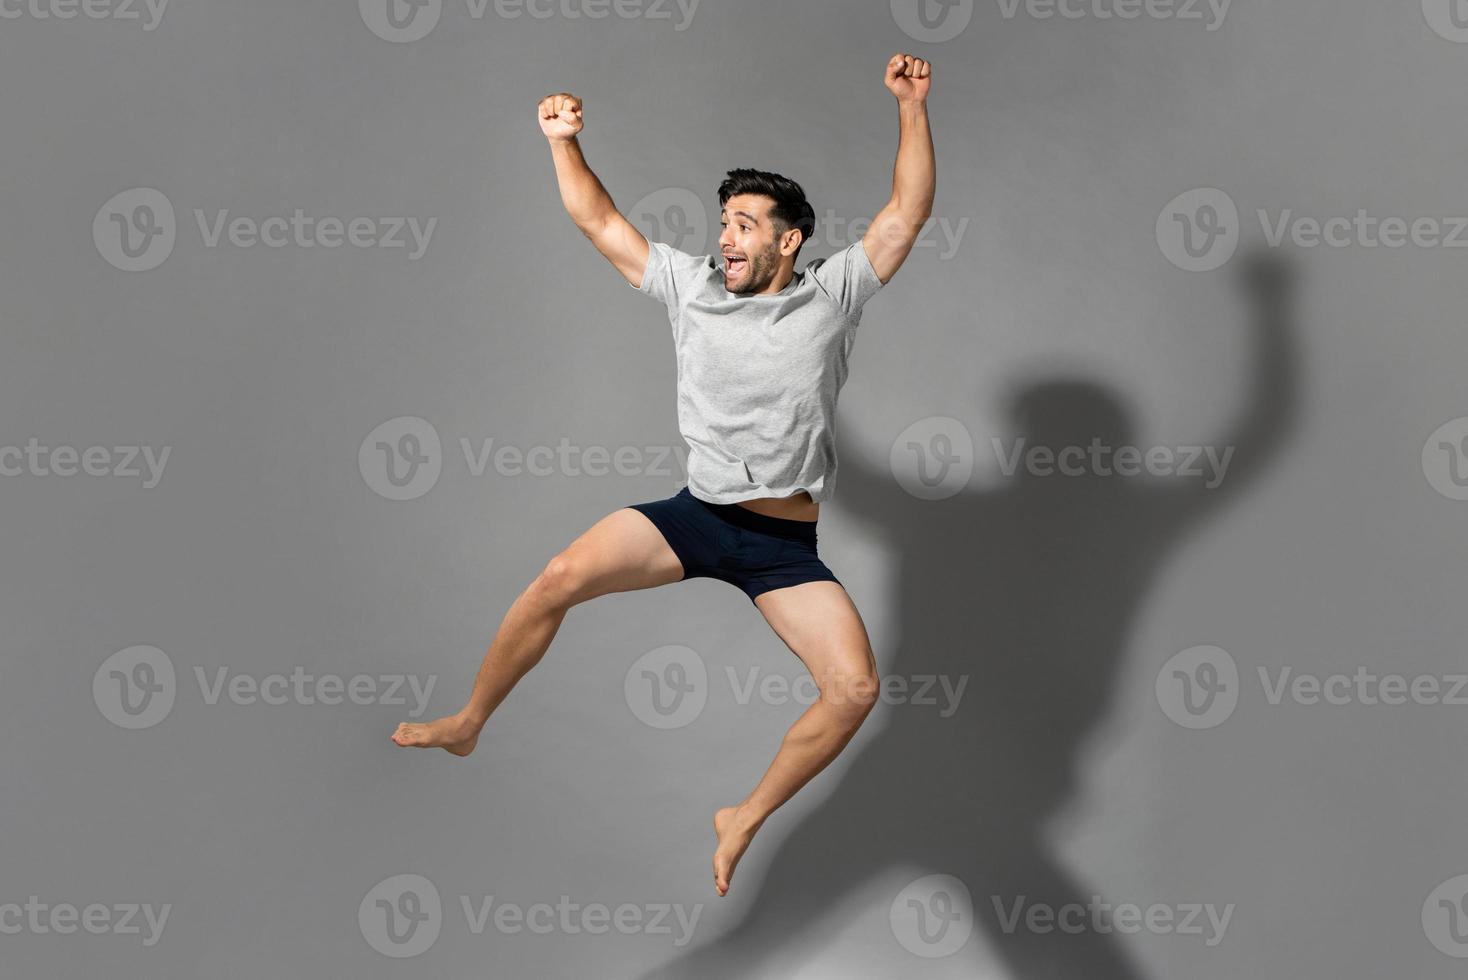 fullängdsporträtt av en ung frisk energisk man som bär nattkläder och hoppar i luften efter att ha vaknat från en god sömn på morgonen foto